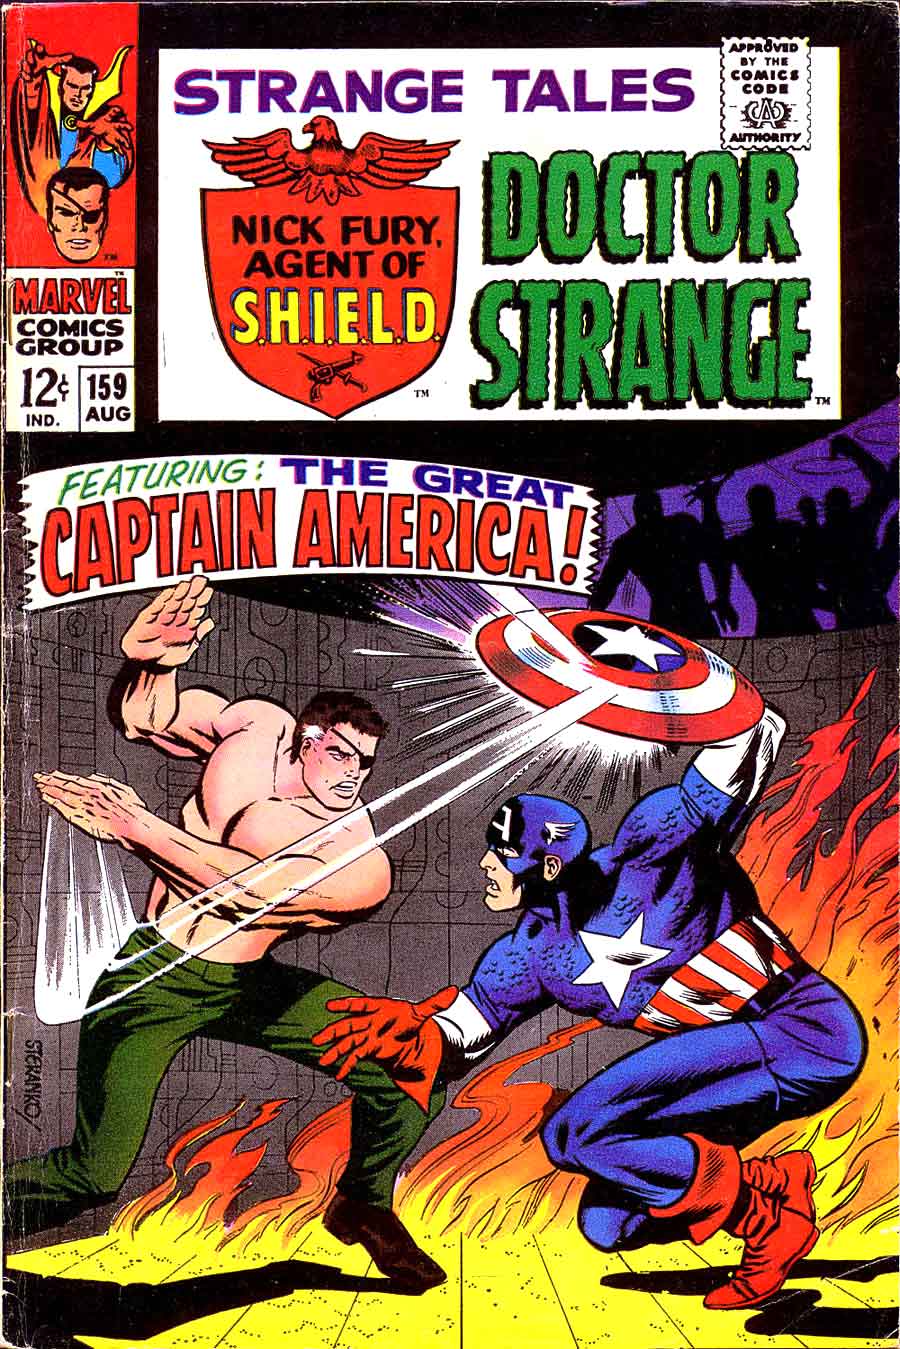 Strange Tales v1 #159 nick fury shield comic book cover art by Jim Steranko